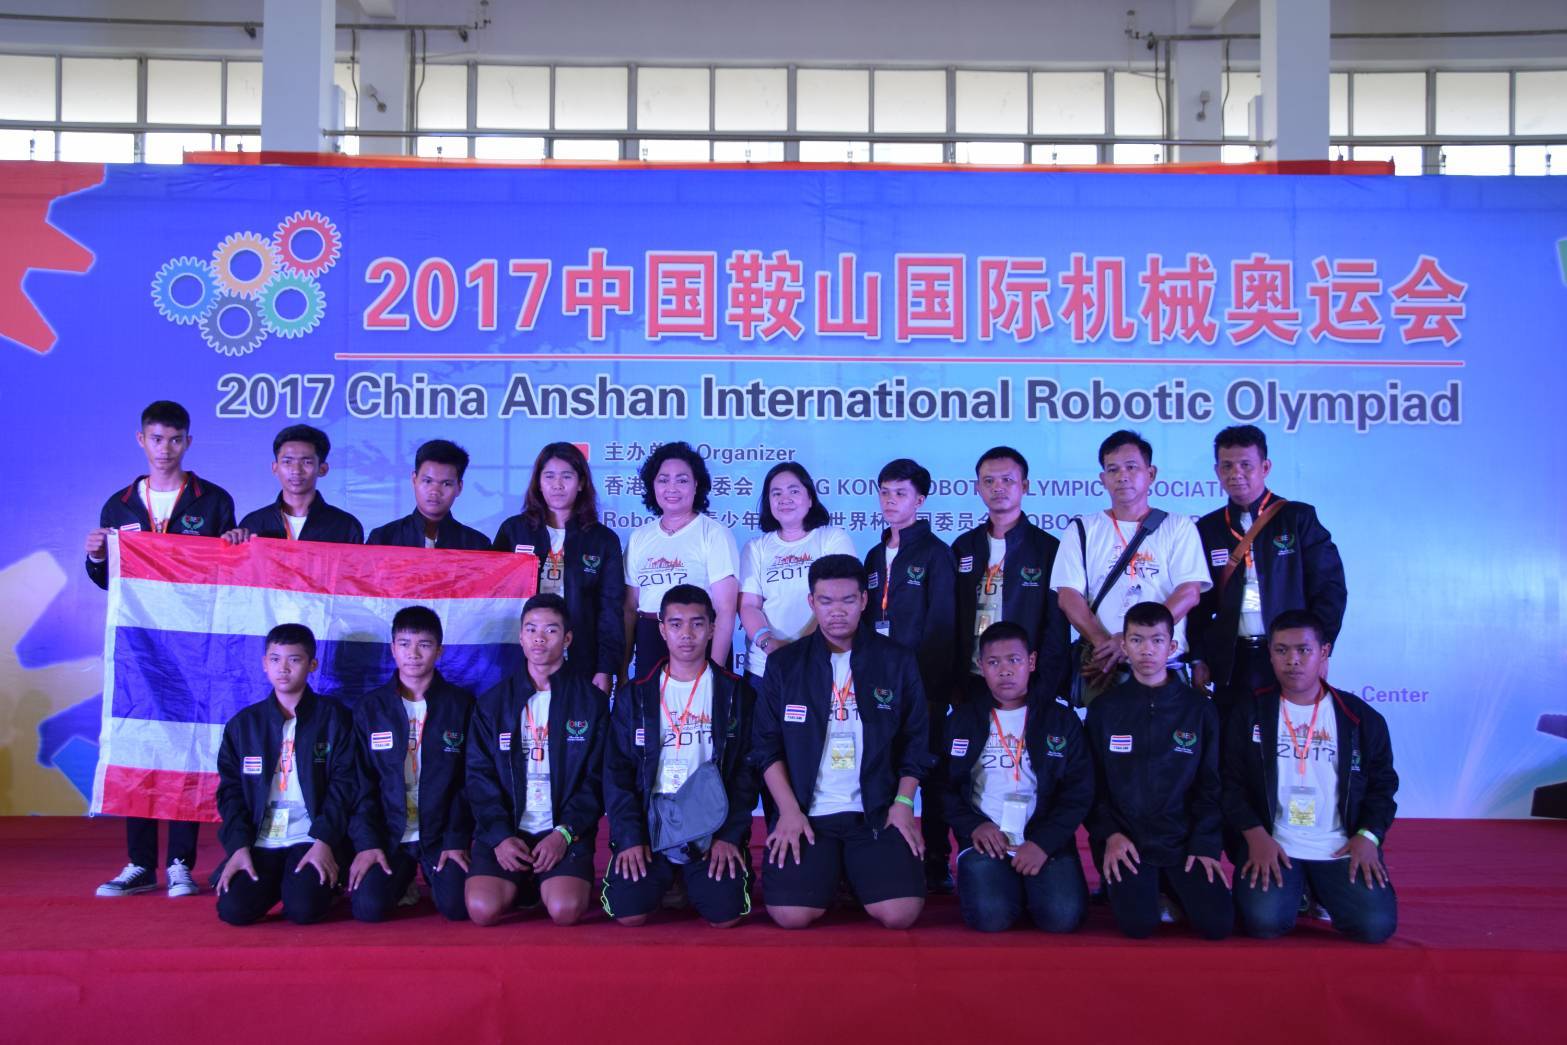 เด็กไทยคว้าแชมป์ 7 ประเภท แข่งหุ่นยนต์นานาชาติที่จีน